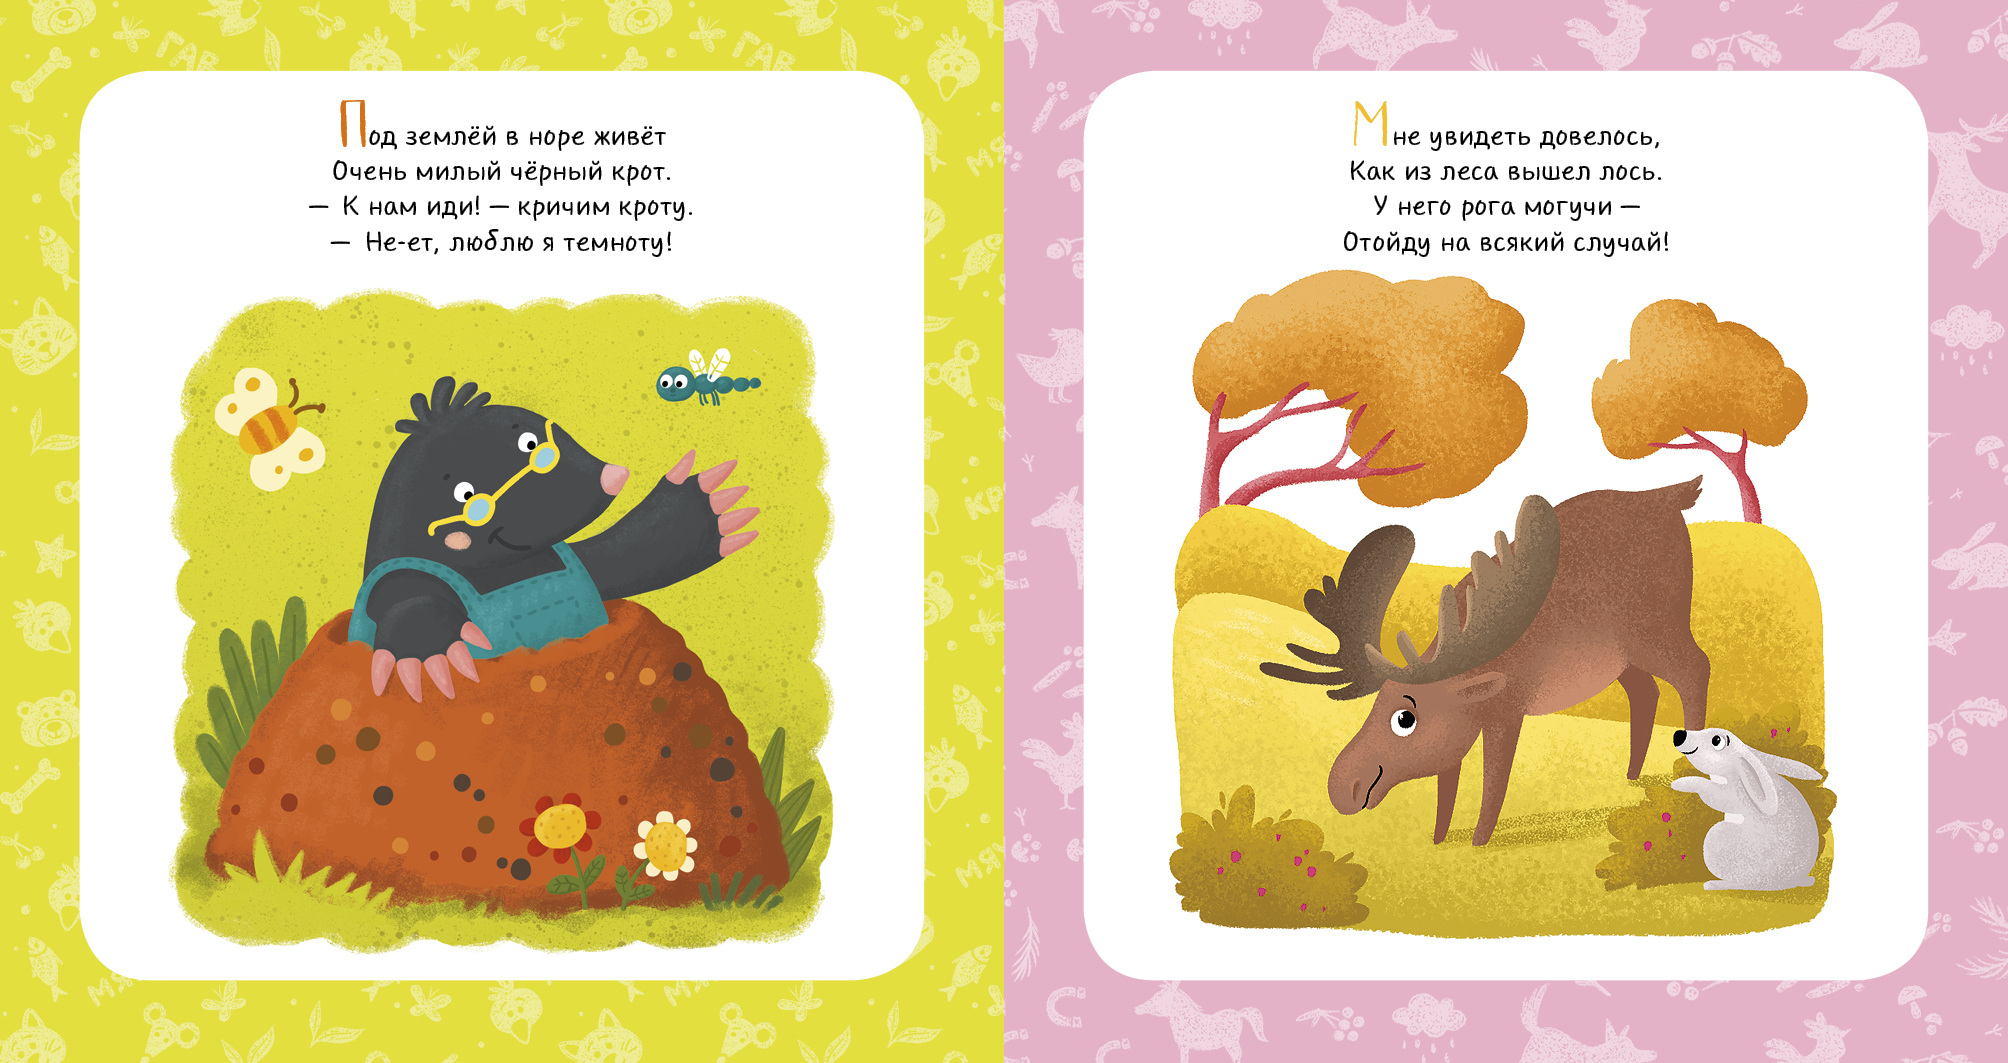 Читать книги детям 4 года. Стихи про животных для детей. Книжки со стишками для малышей. Детские стихи про животных. Стишки про животных для детей.